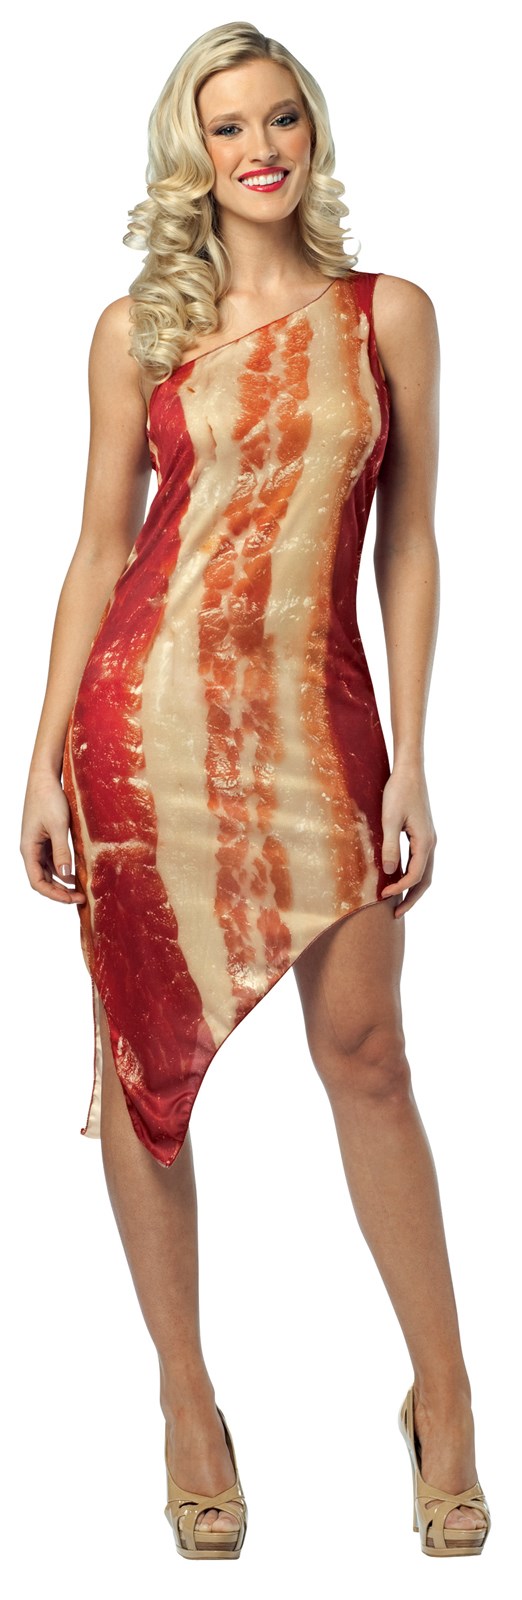 Bacon Sexy 45